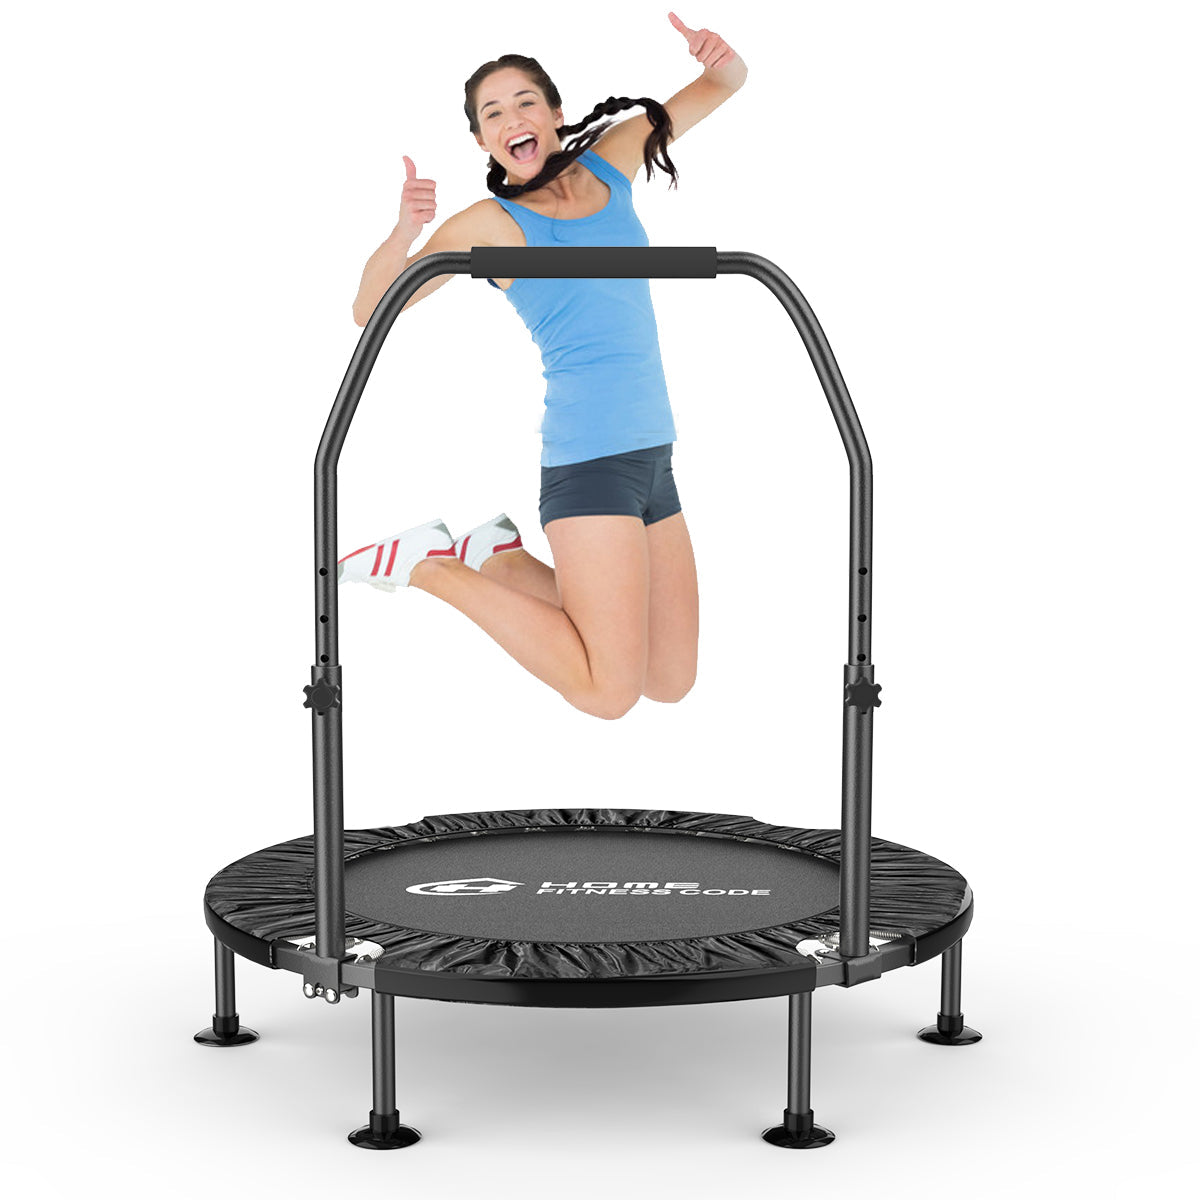 Fitness 40“ Falttrampolin, Übung Trampolin für Kinder & Erwachsene, Rebounder Trampolin für Indoor Outdoor